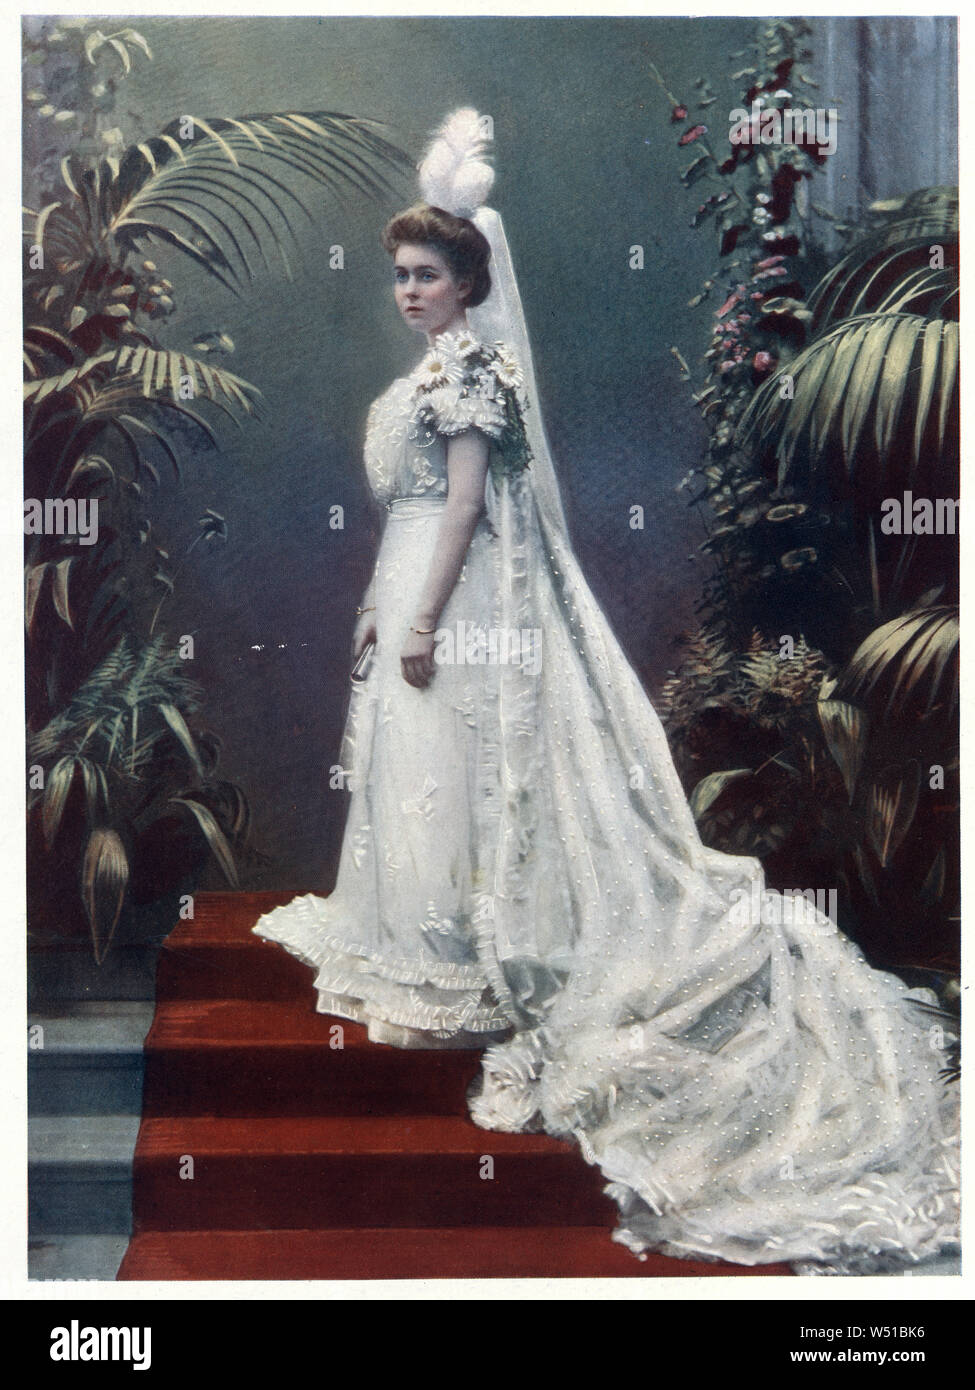 La princesse Margaret de Connaught était la Princesse de Suède et la duchesse de Scania comme la première épouse du futur roi Gustaf VI Adolf. Elle était la fille aînée du prince Arthur, duc de Connaught, troisième fils de la reine Victoria du Royaume-Uni, et son épouse la princesse Louise Marguerite de Prusse. Banque D'Images